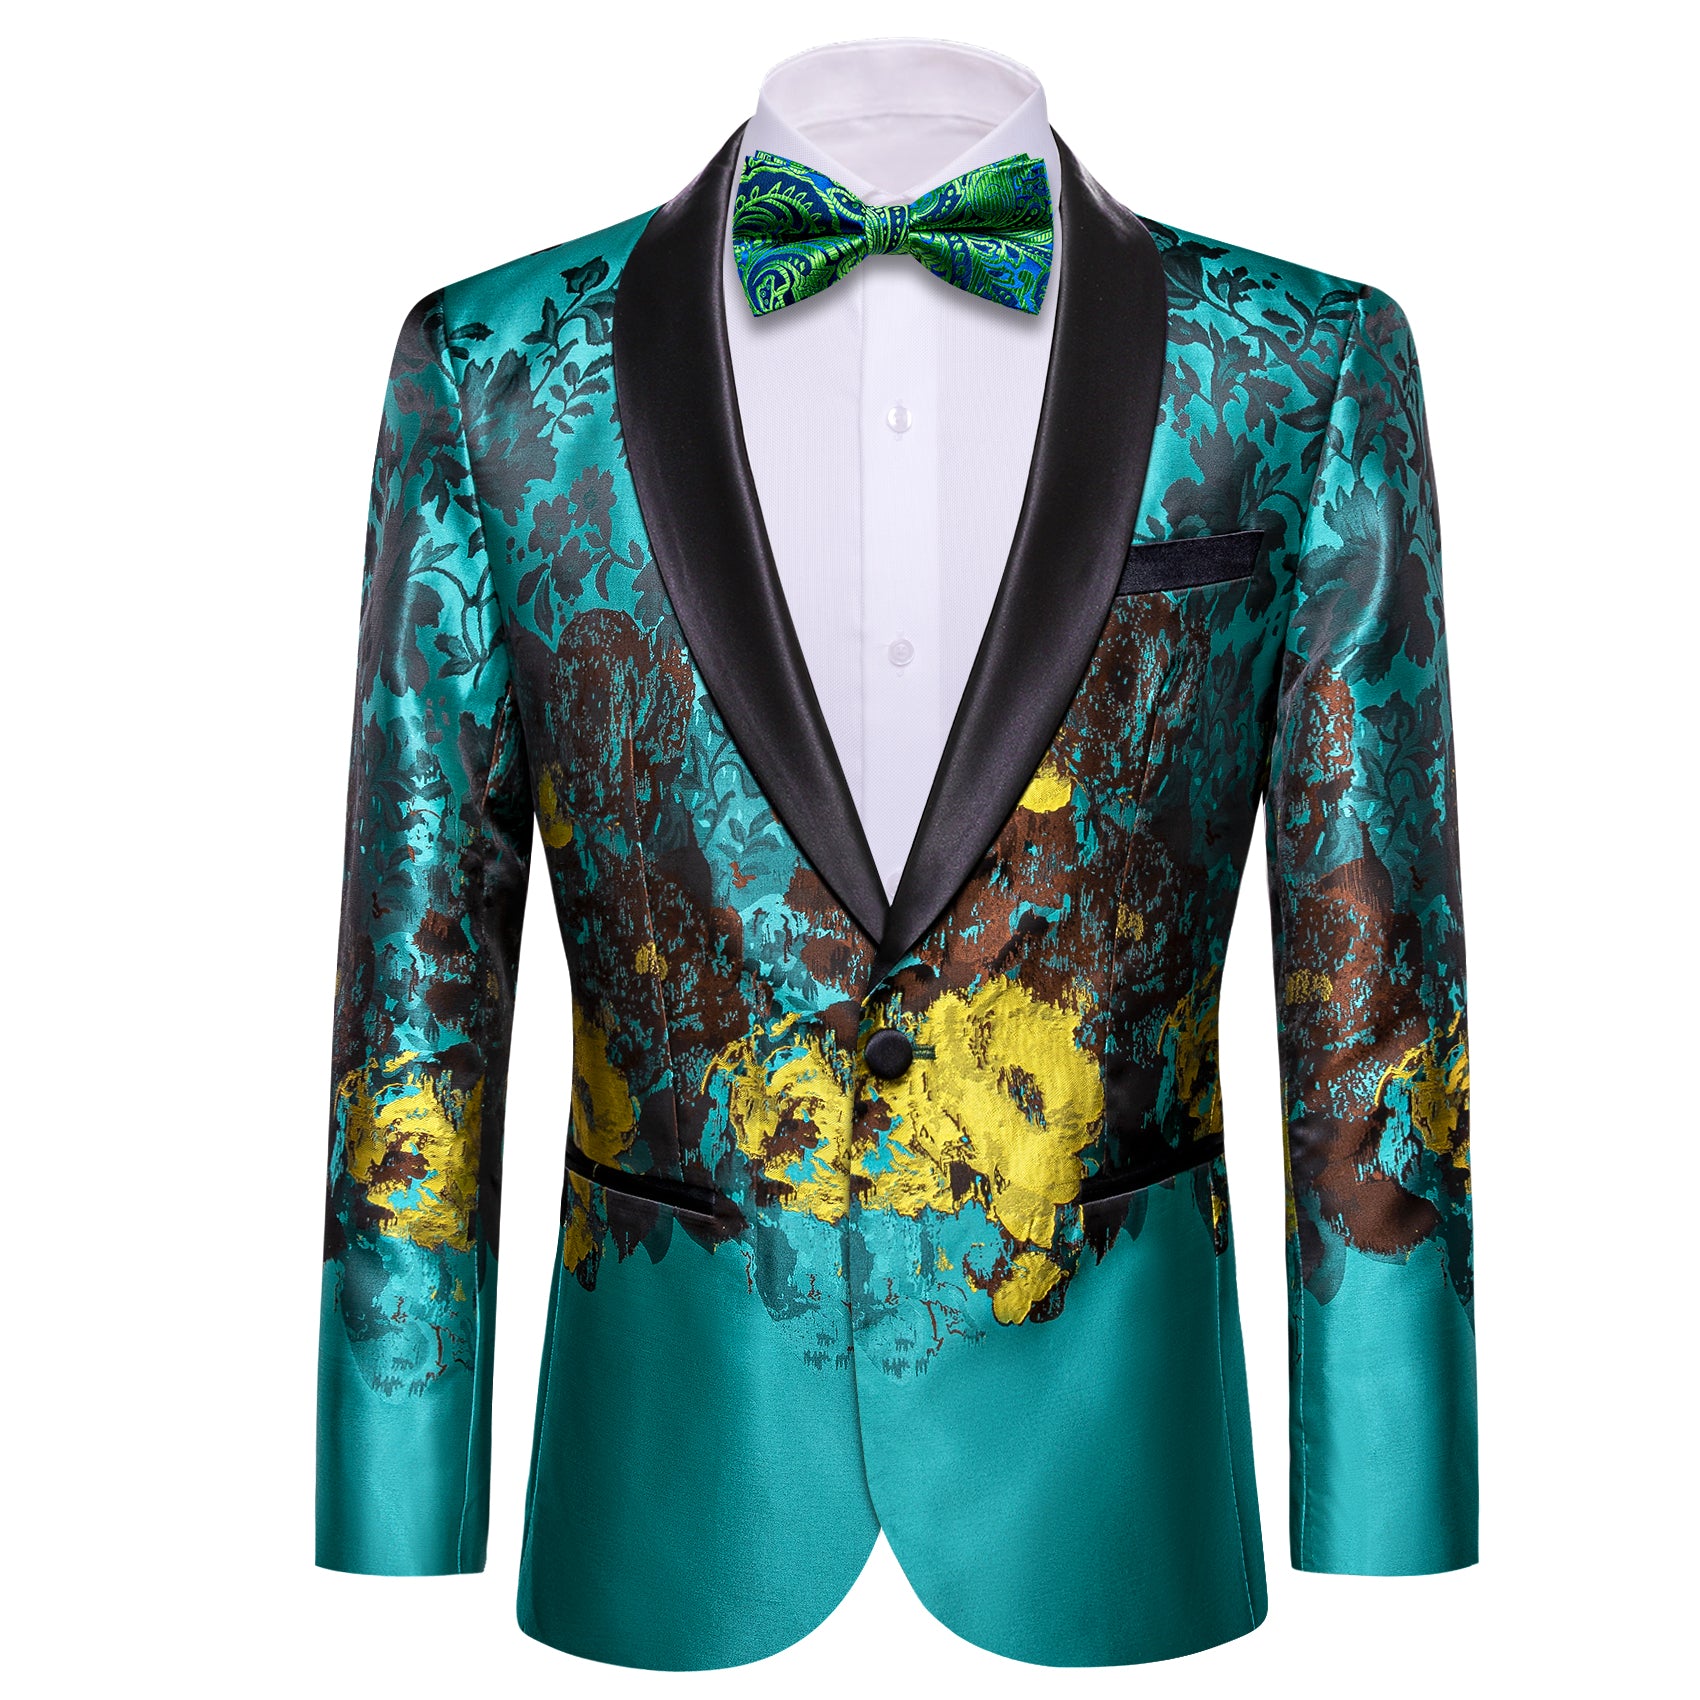 Barry.wang Men's Suit Blue Brown Floral Suit Jacket for Dress Party